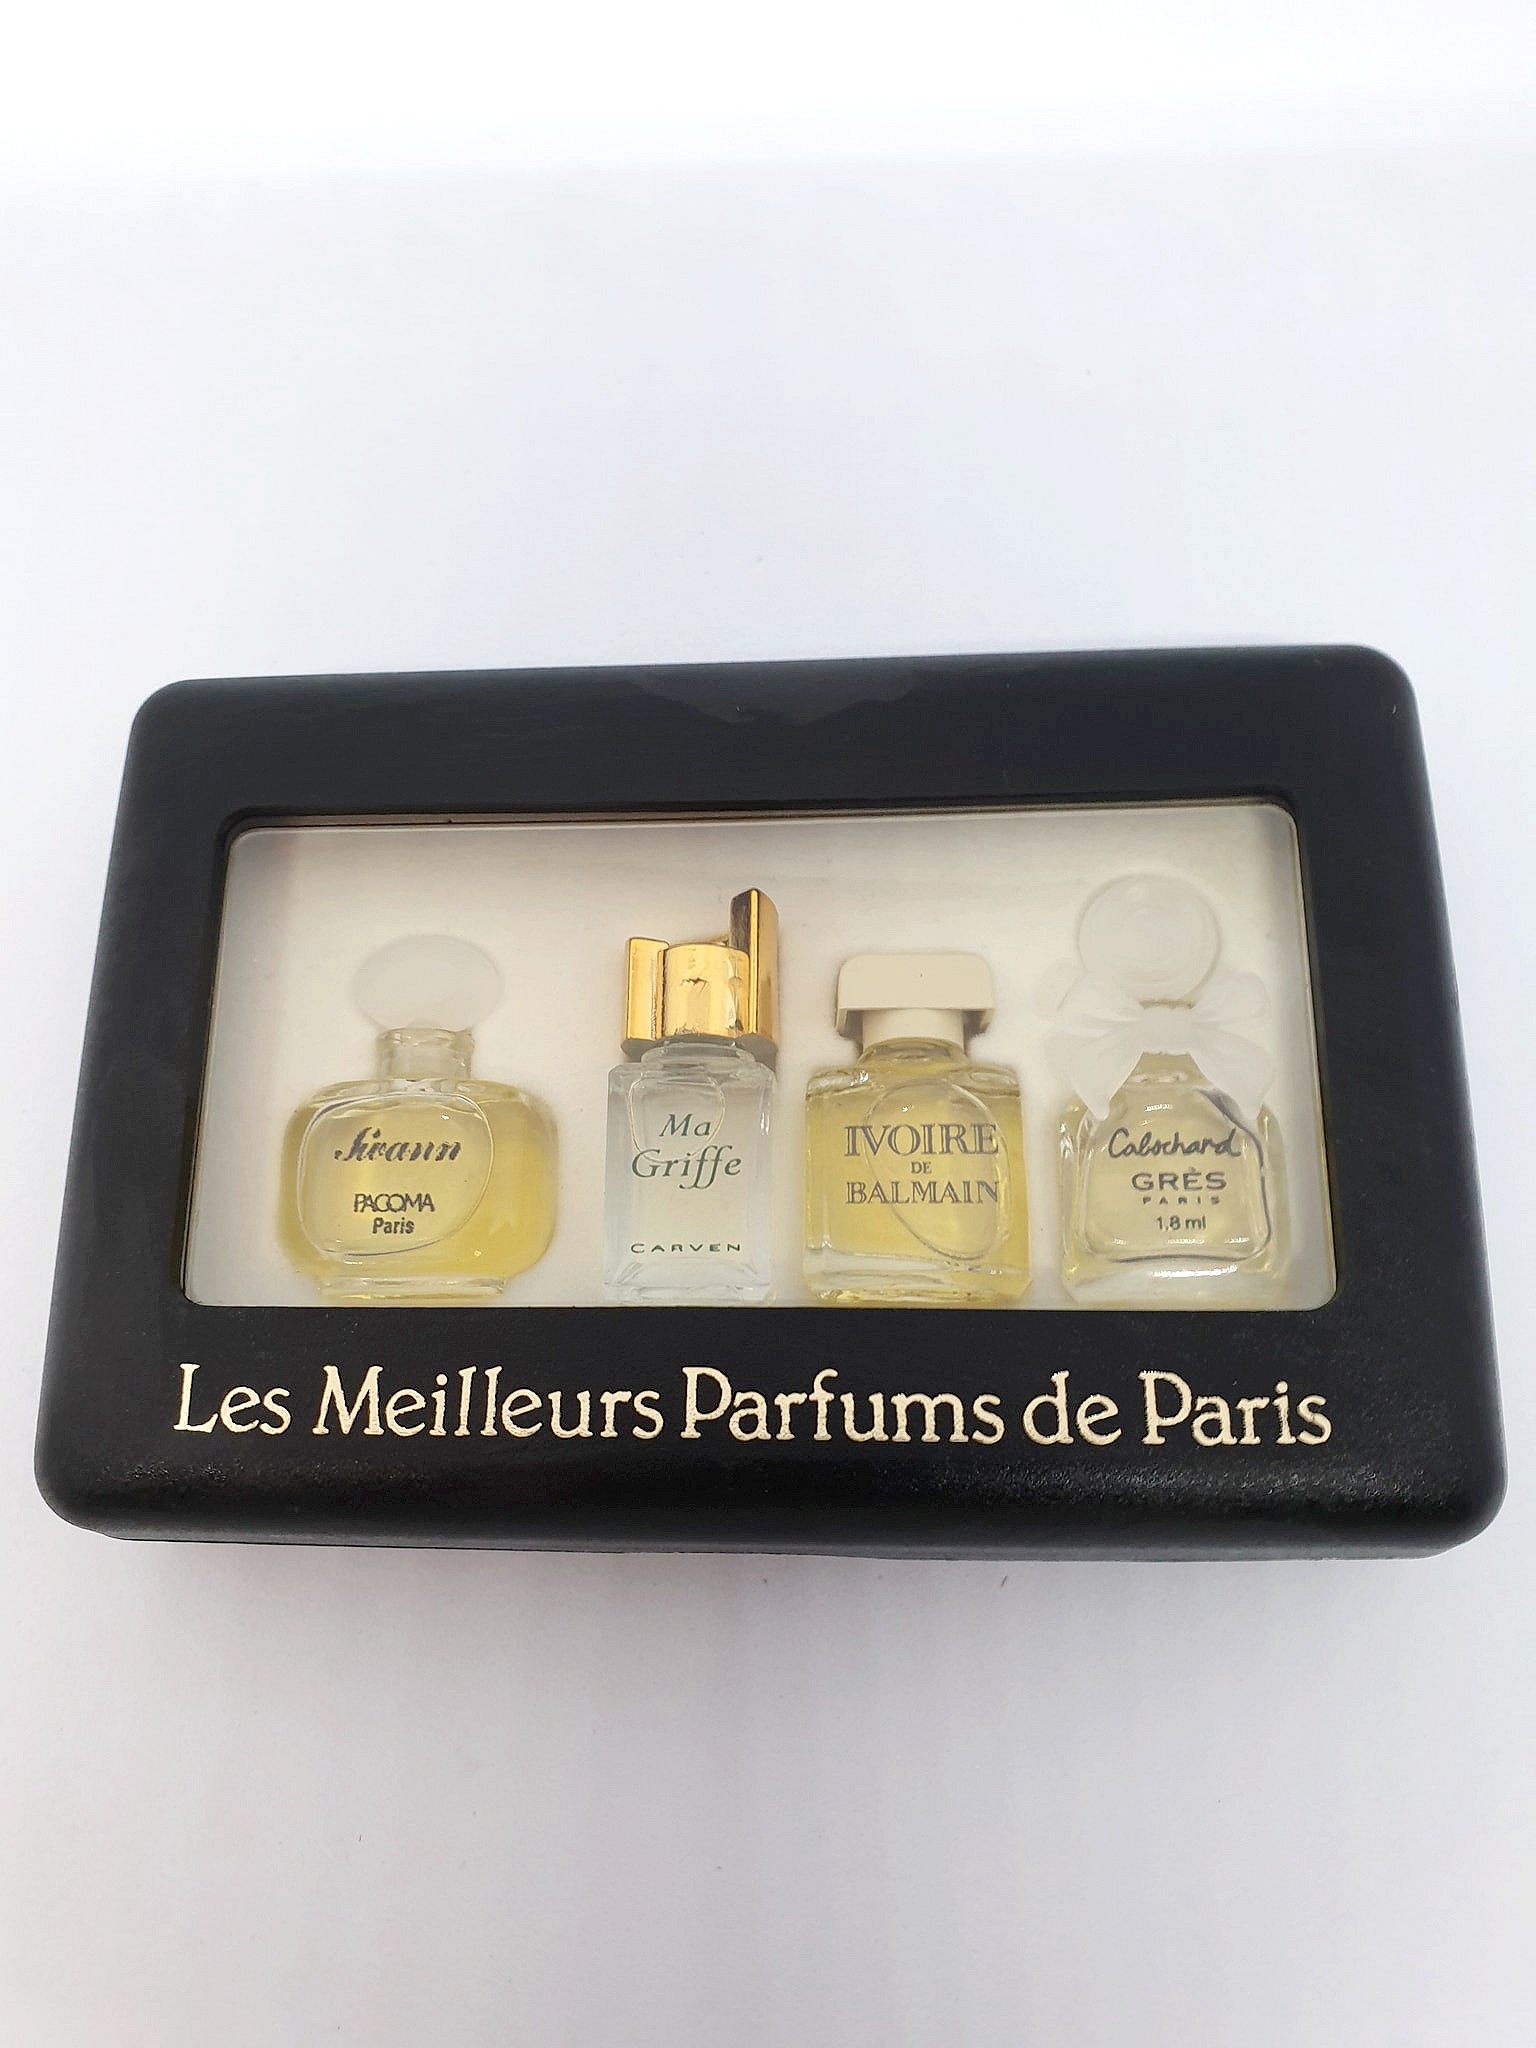 Les Meilleurs Parfums de Paris 5 miniature bottles of perfume 1/3